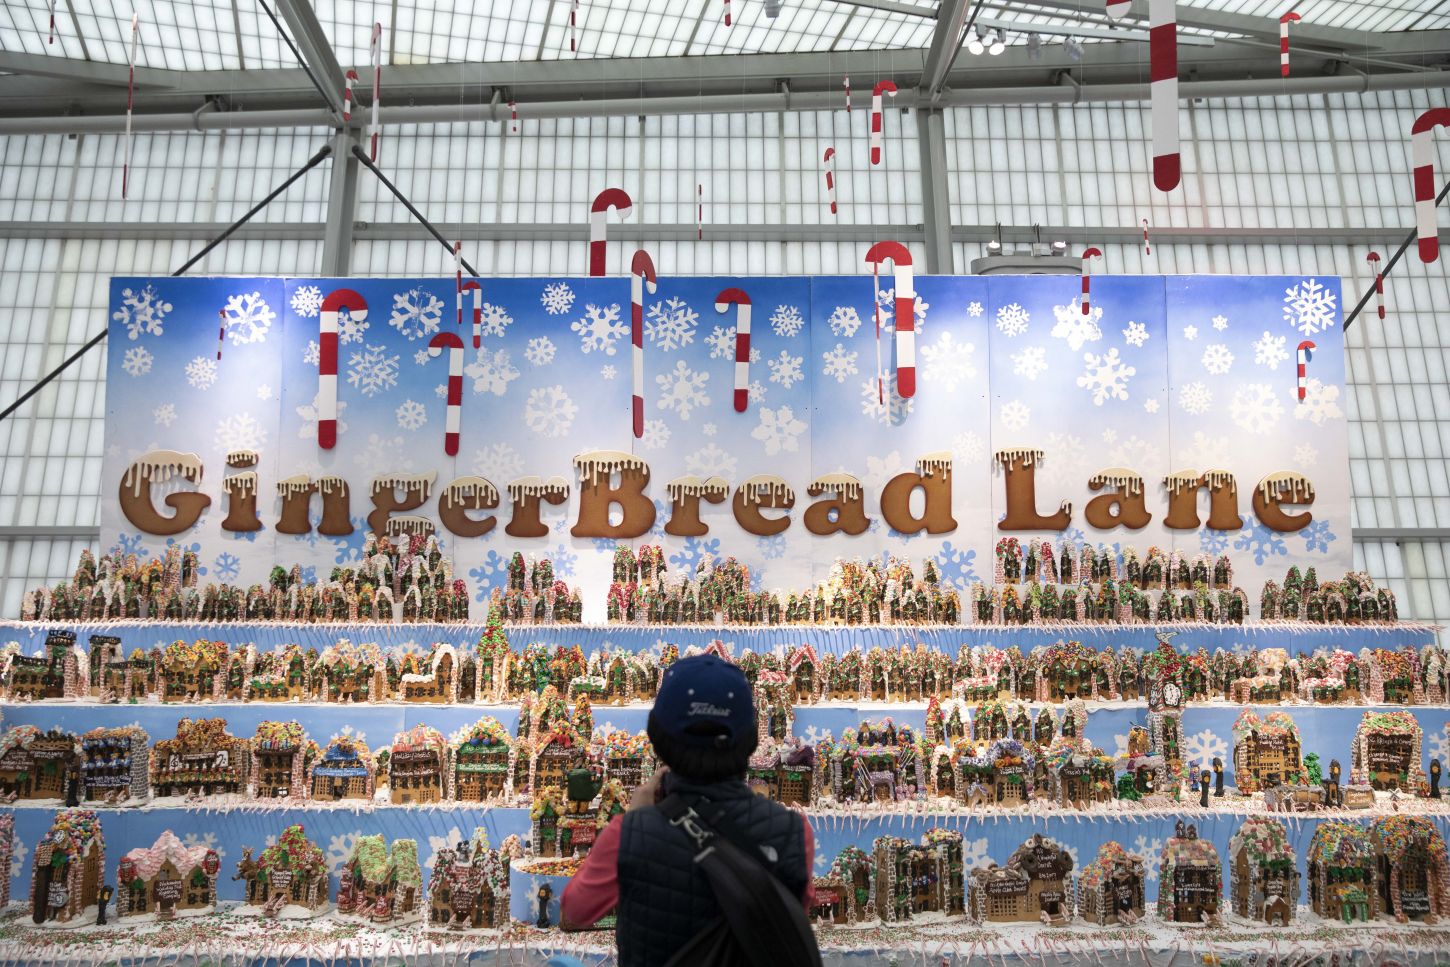 Wennes mal keine Show sein soll: die Ginger Bread Lane in der New York Hall of Science